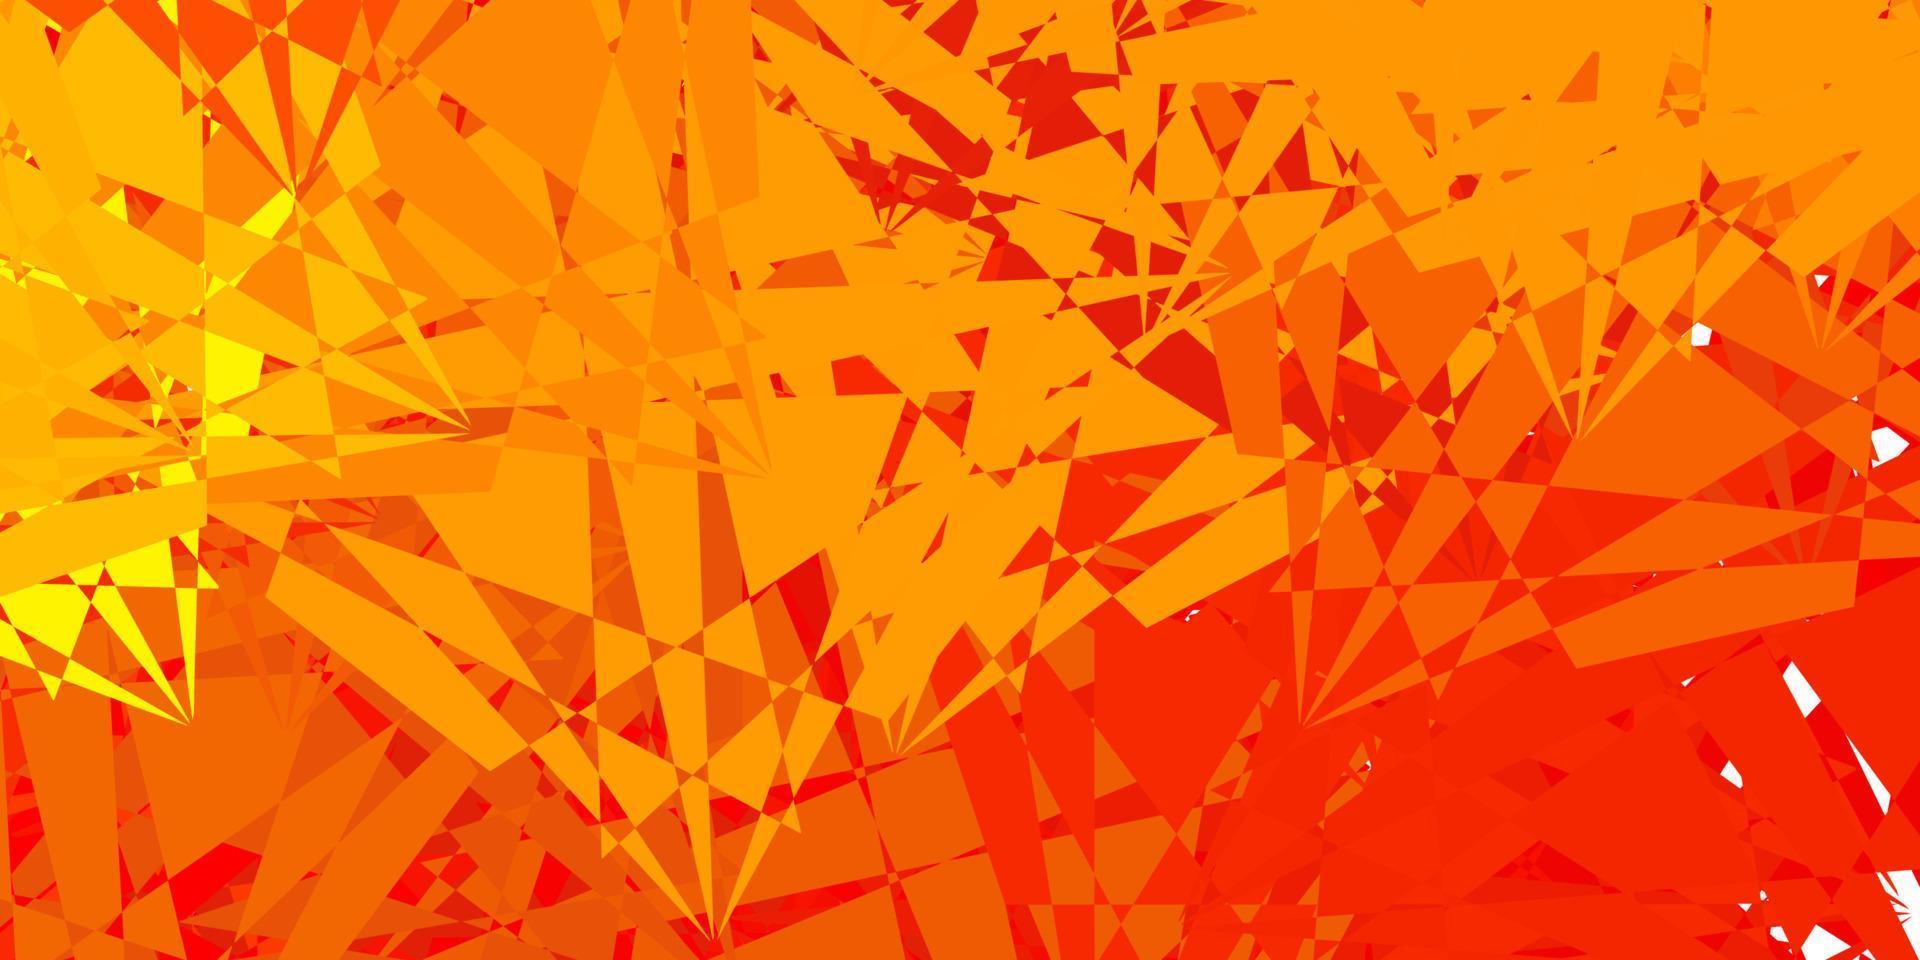 texture de vecteur rouge et jaune clair avec des triangles aléatoires.